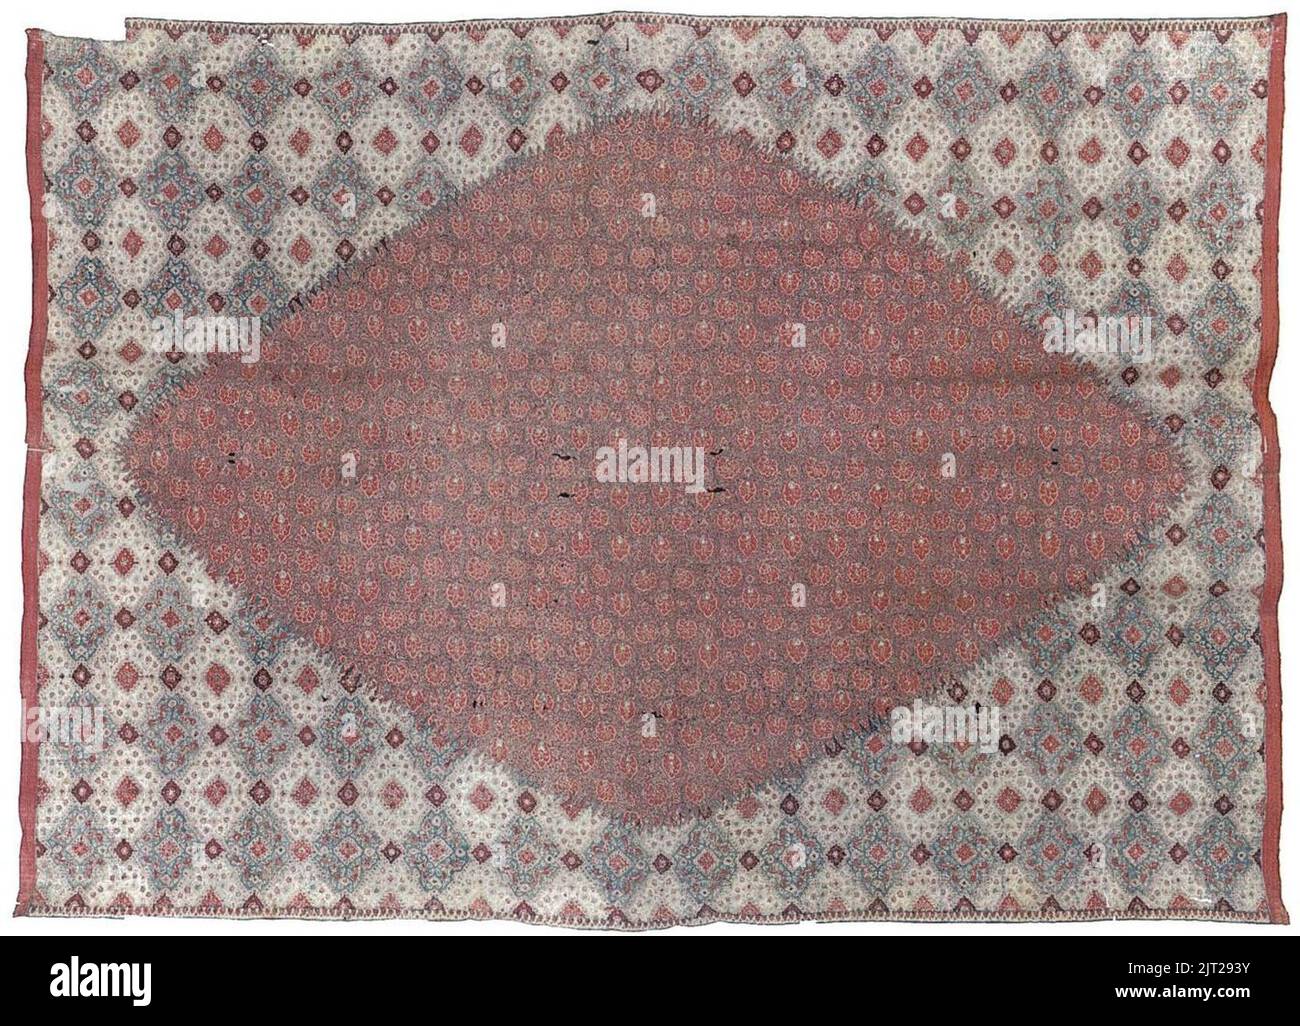 Trade cloth (sarasa) from India, Coromandel Coast, Stock Photo